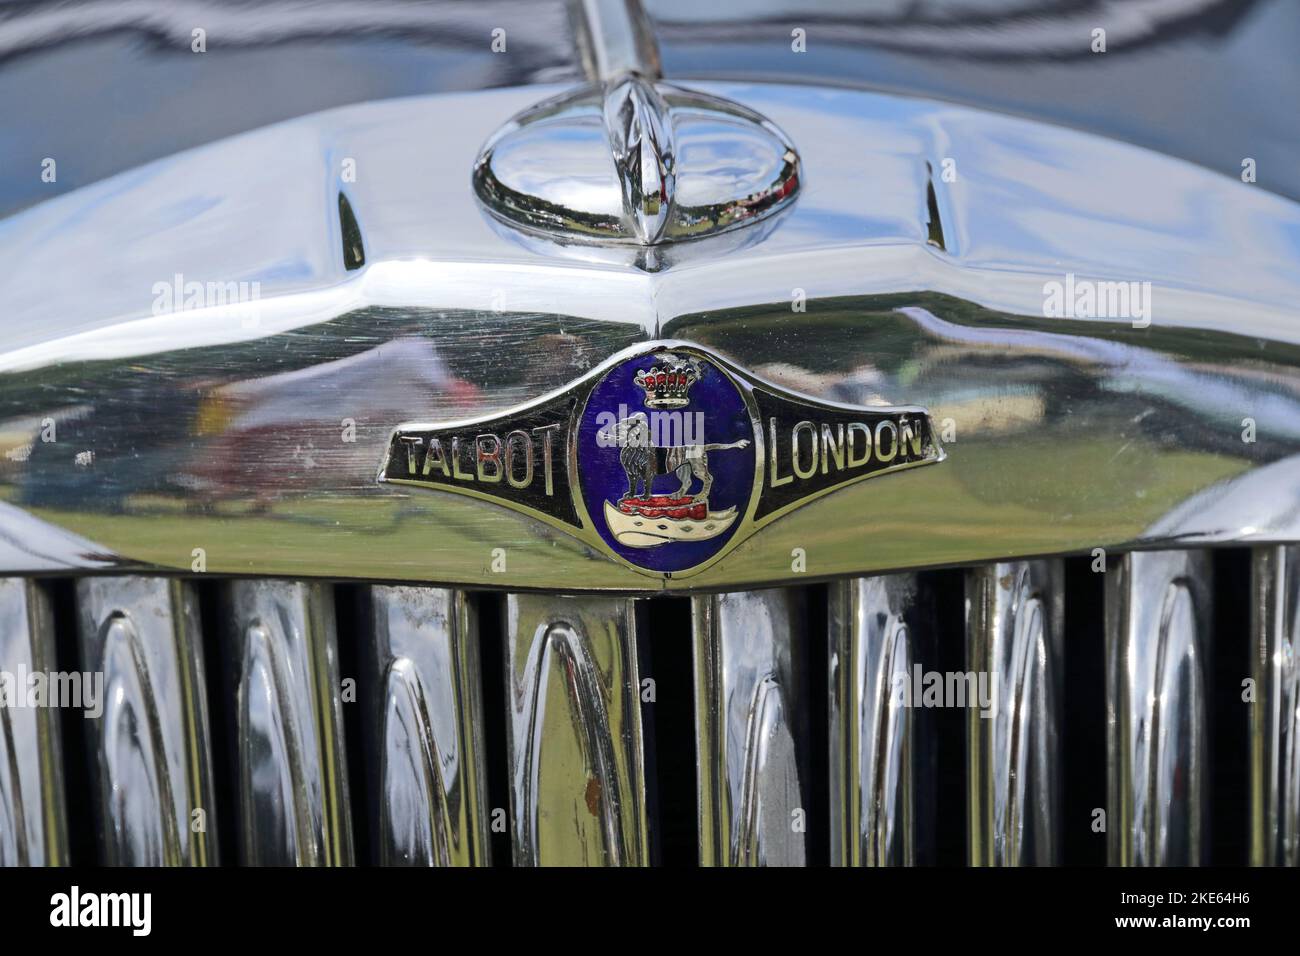 Badge sulla parte superiore della griglia del radiatore sulla vettura Talbot London Foto Stock